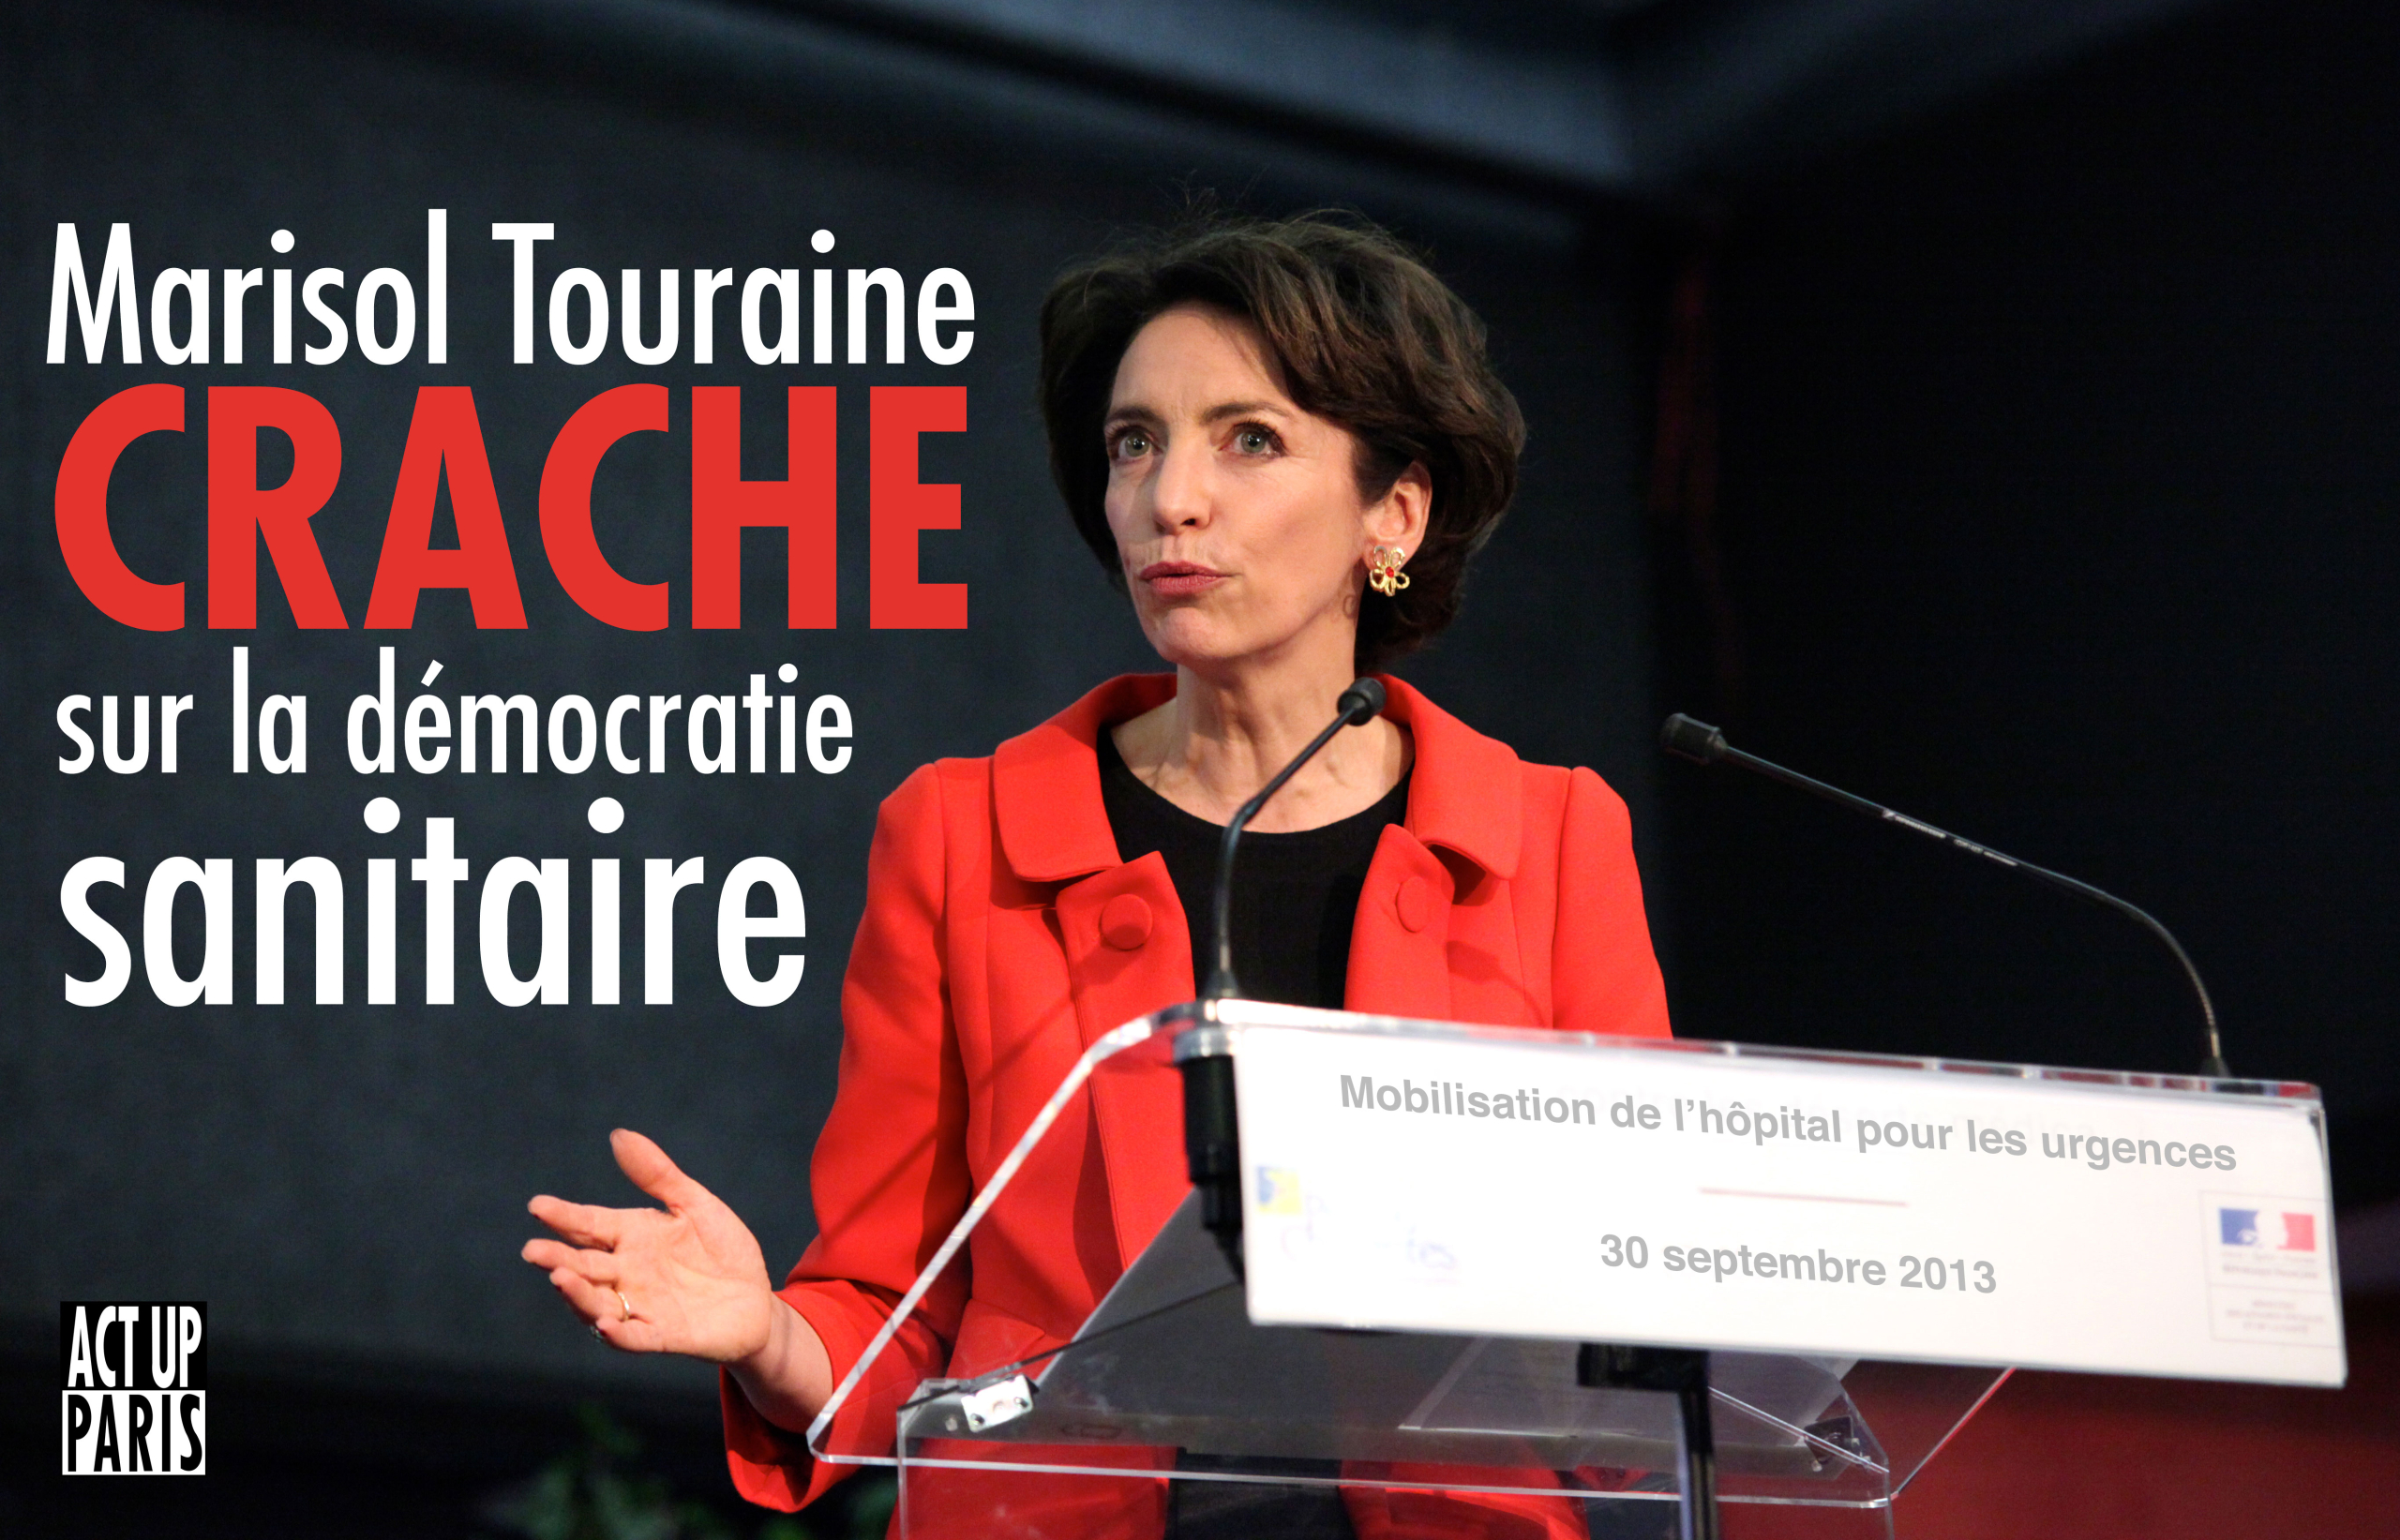 Marisol Touraine crache sur la démocratie sanitaire